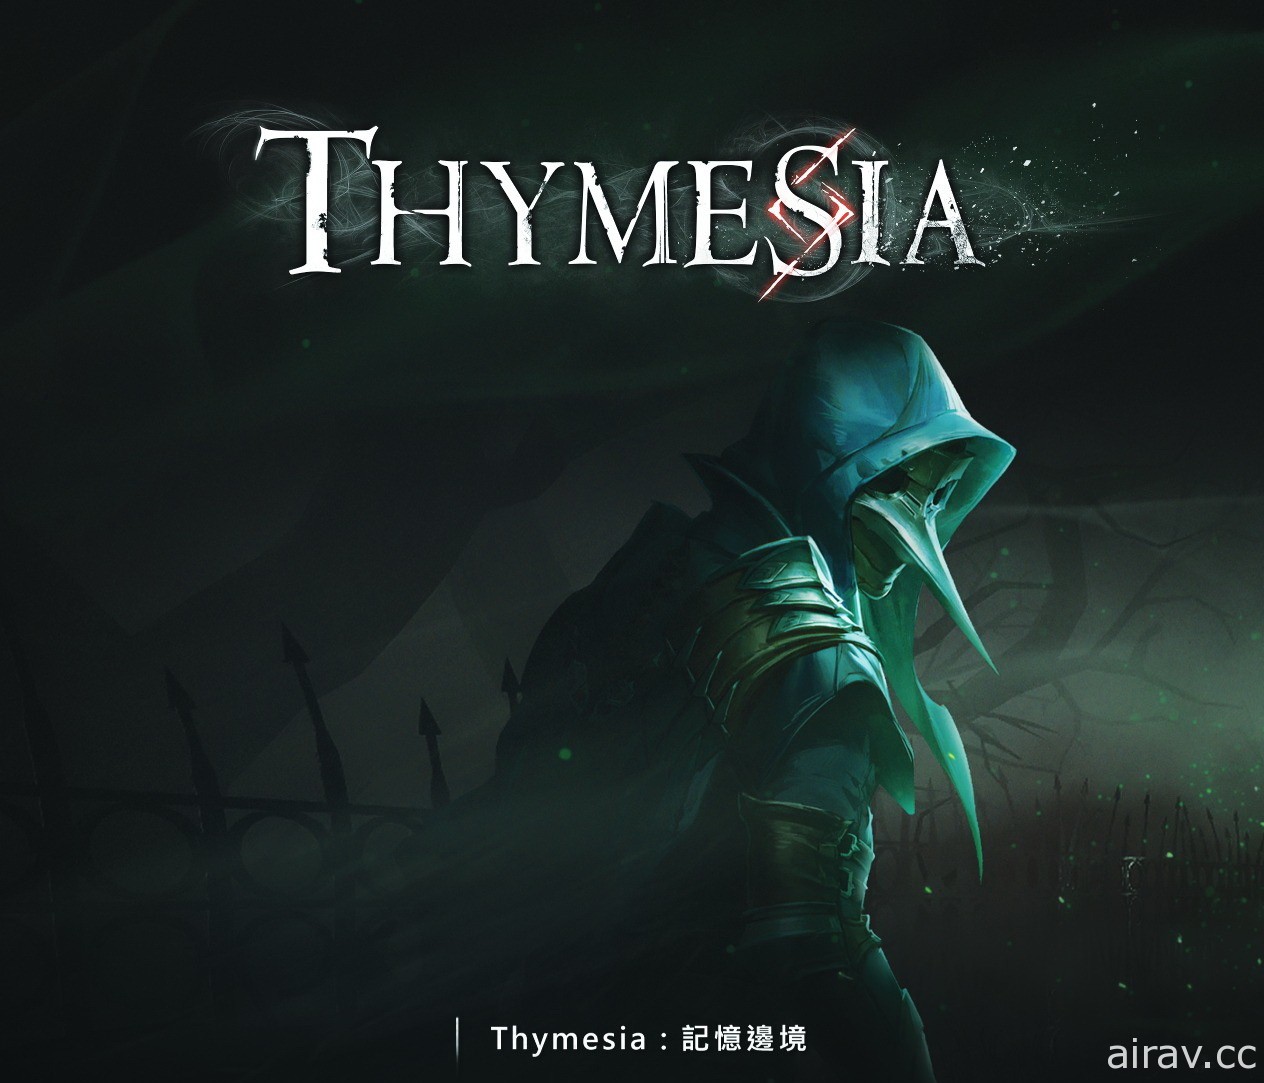 台湾团队开发黑暗奇幻动作游戏《Thymesia：记忆边境》公开闪躲机制介绍影片